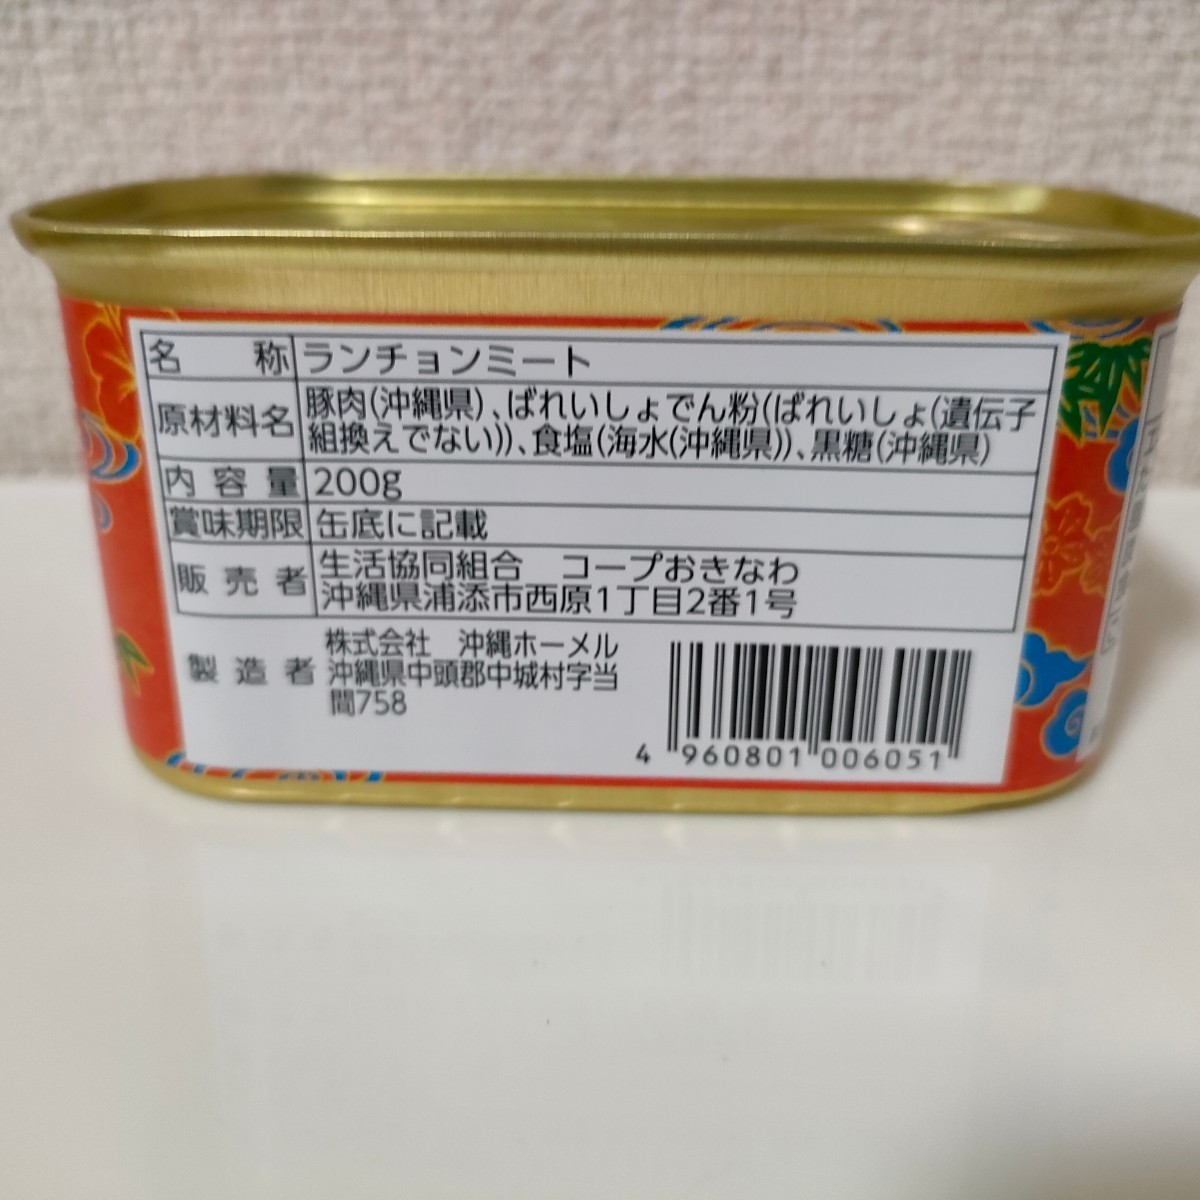 高価値 沖縄県産ポークランチョンミート コープ缶 10缶 メルカリ便 匿名配送